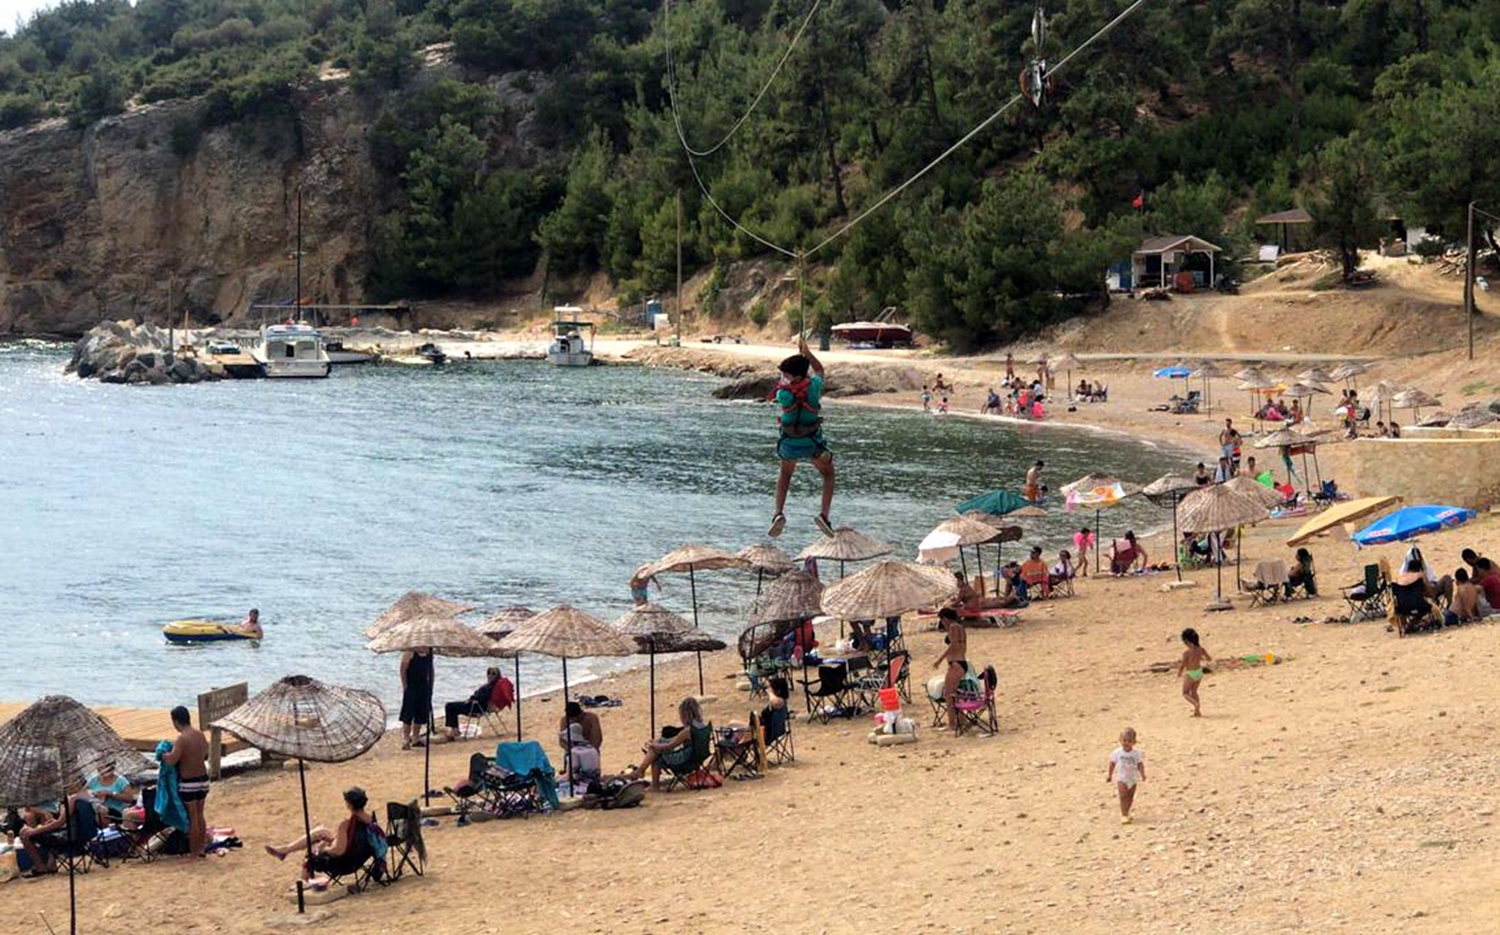 Saros'ta turizm hareketlilii sryor: Akn akn geliyorlar